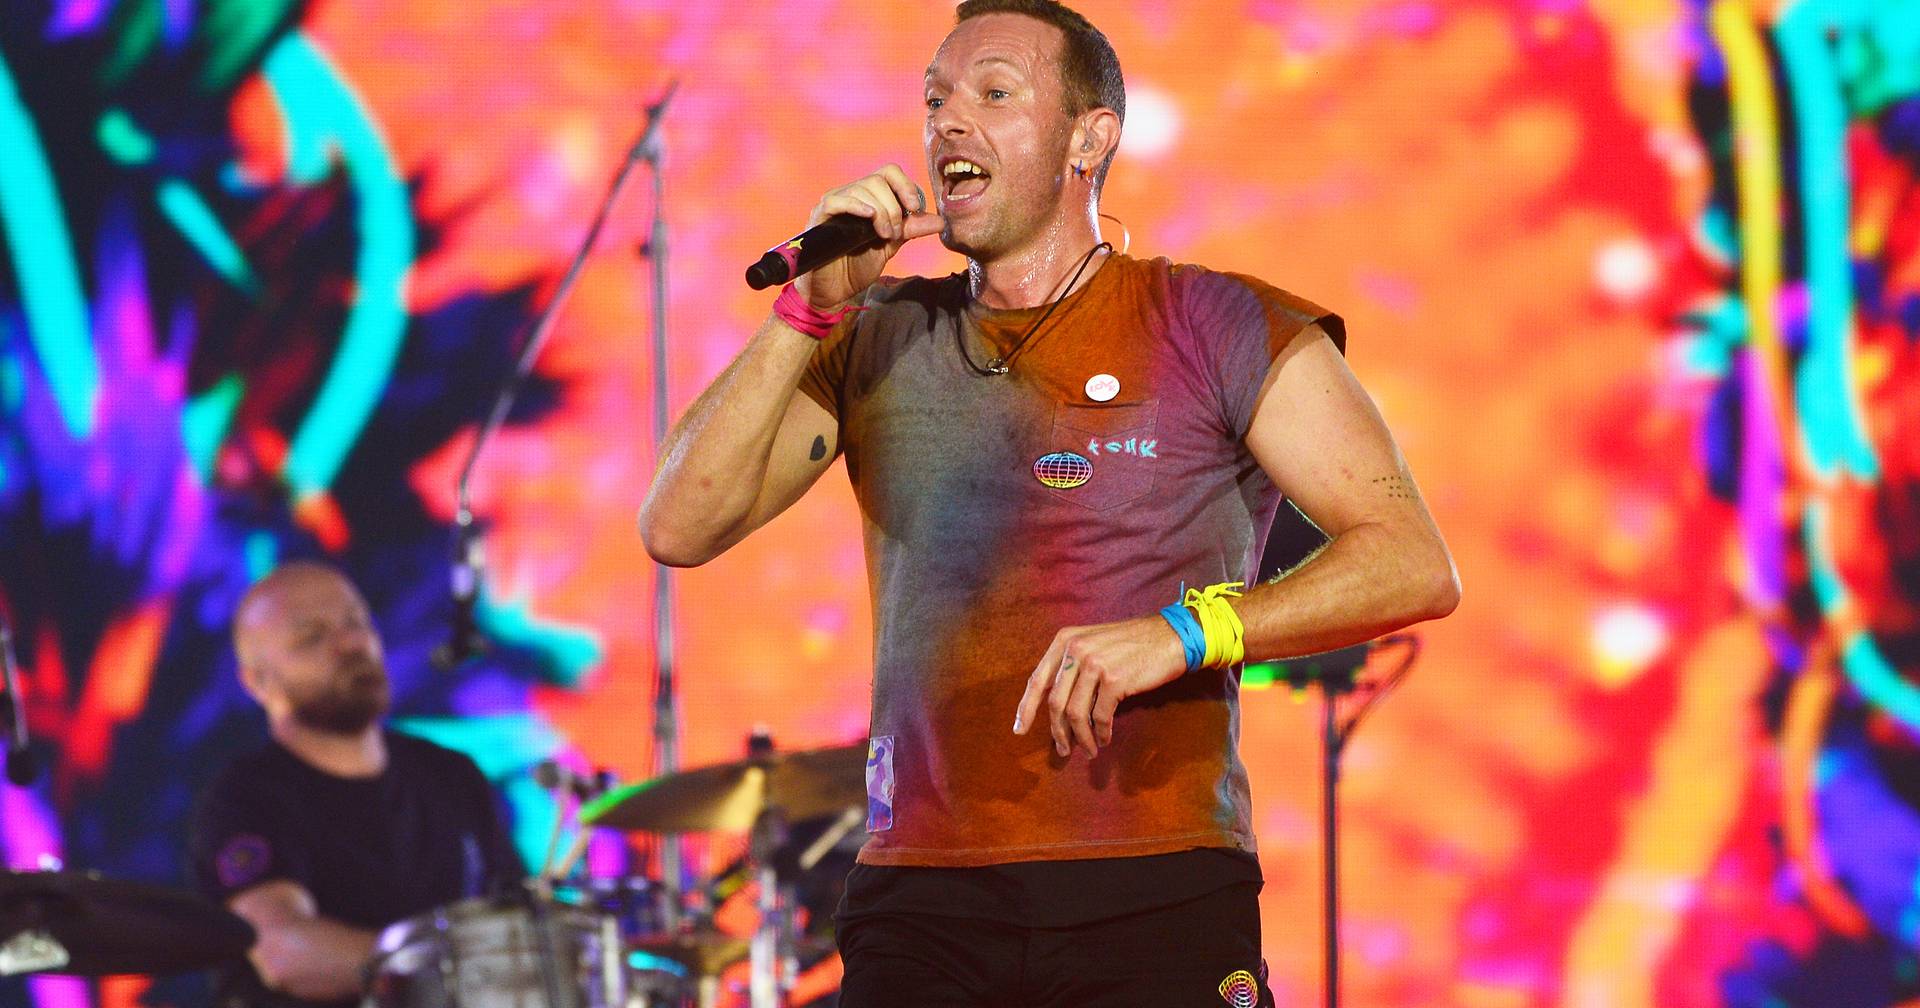 Le concert de Coldplay à Coimbra est complet.  Nouvelle date annoncée : 18 mai 2023